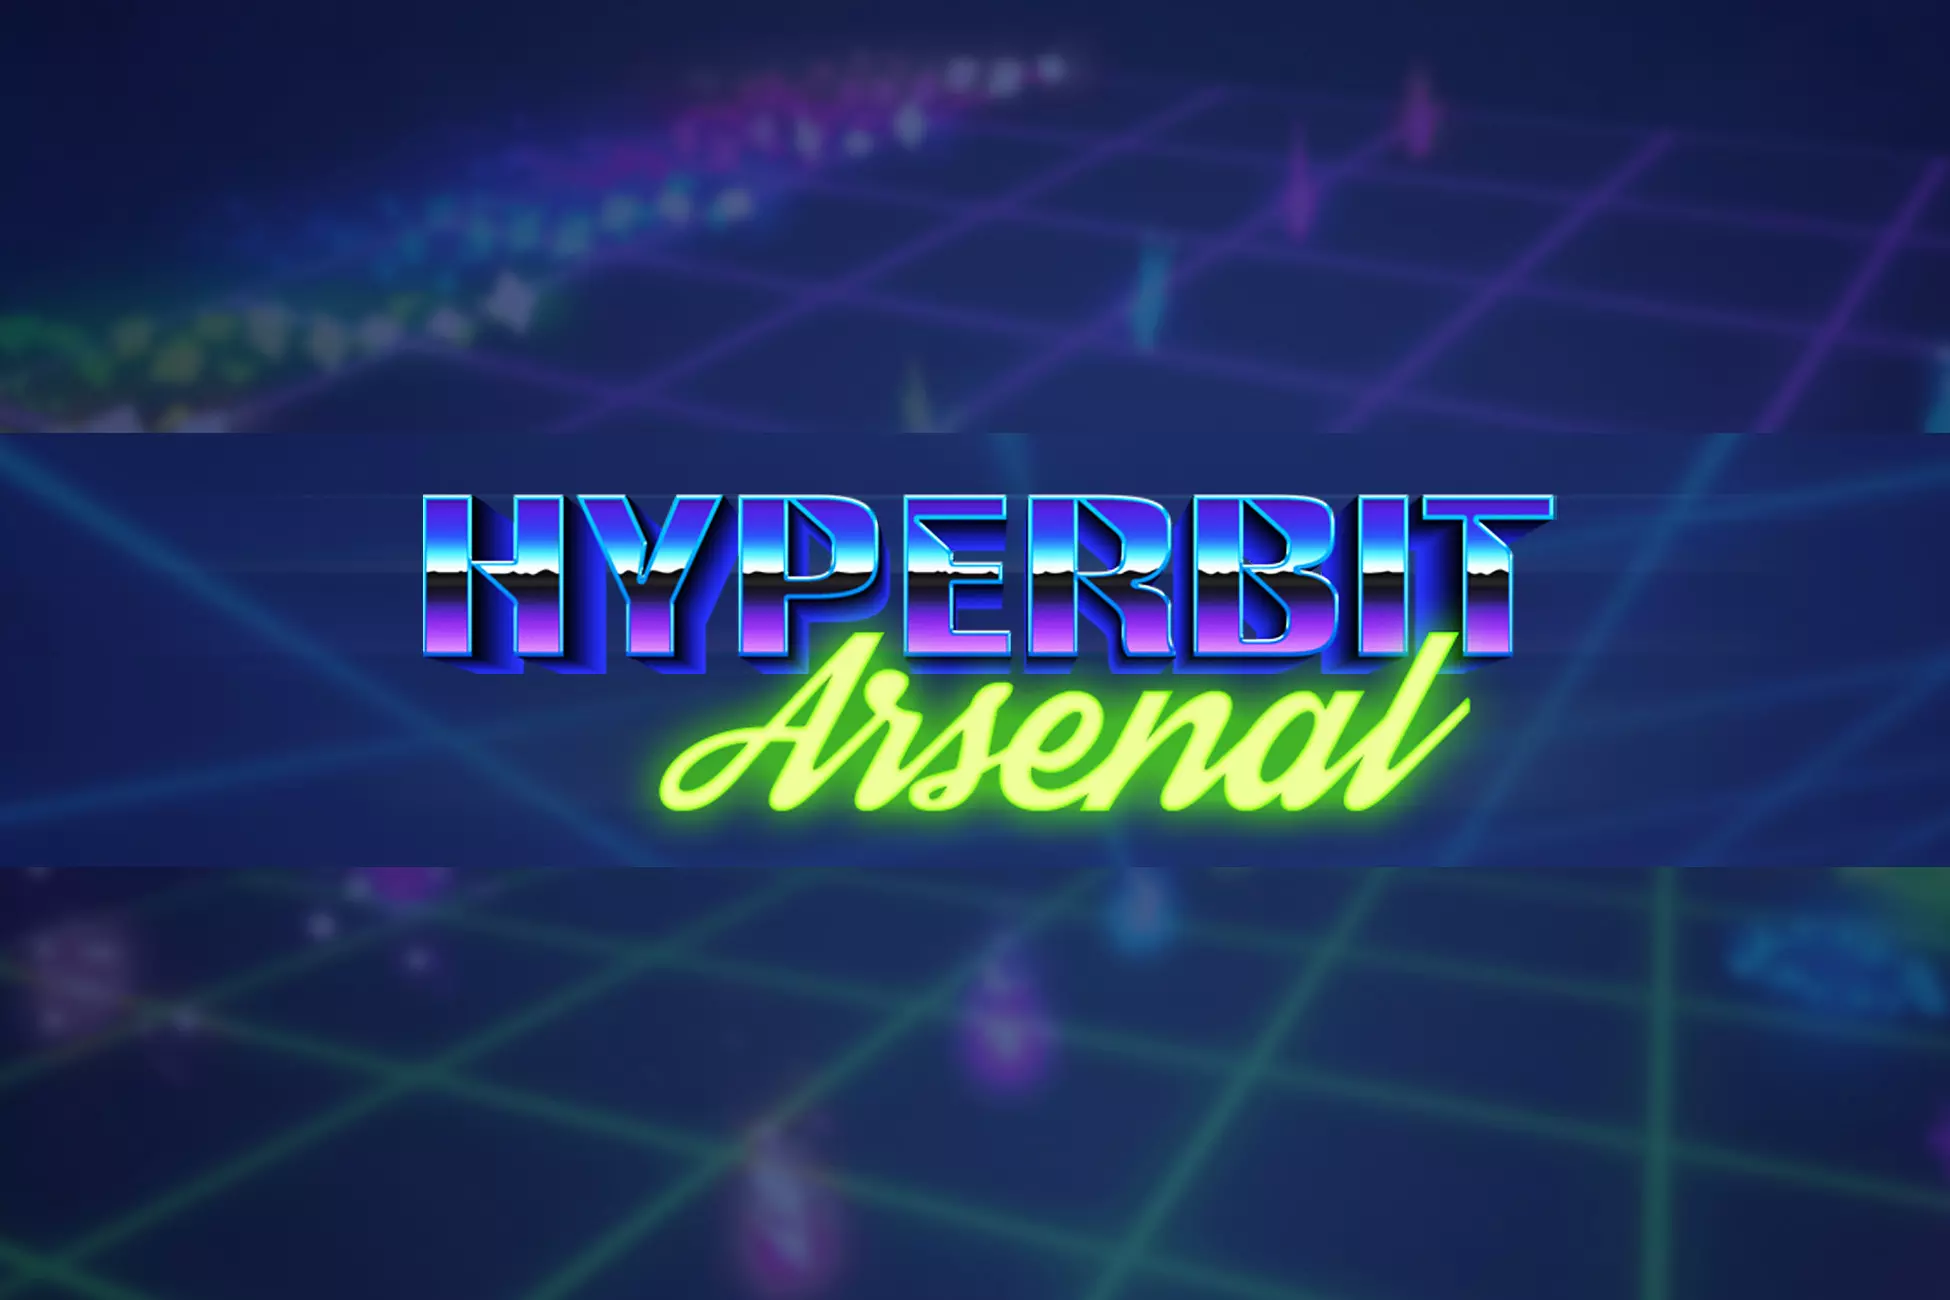 Unity Asset Hyperbit Arsenal free download